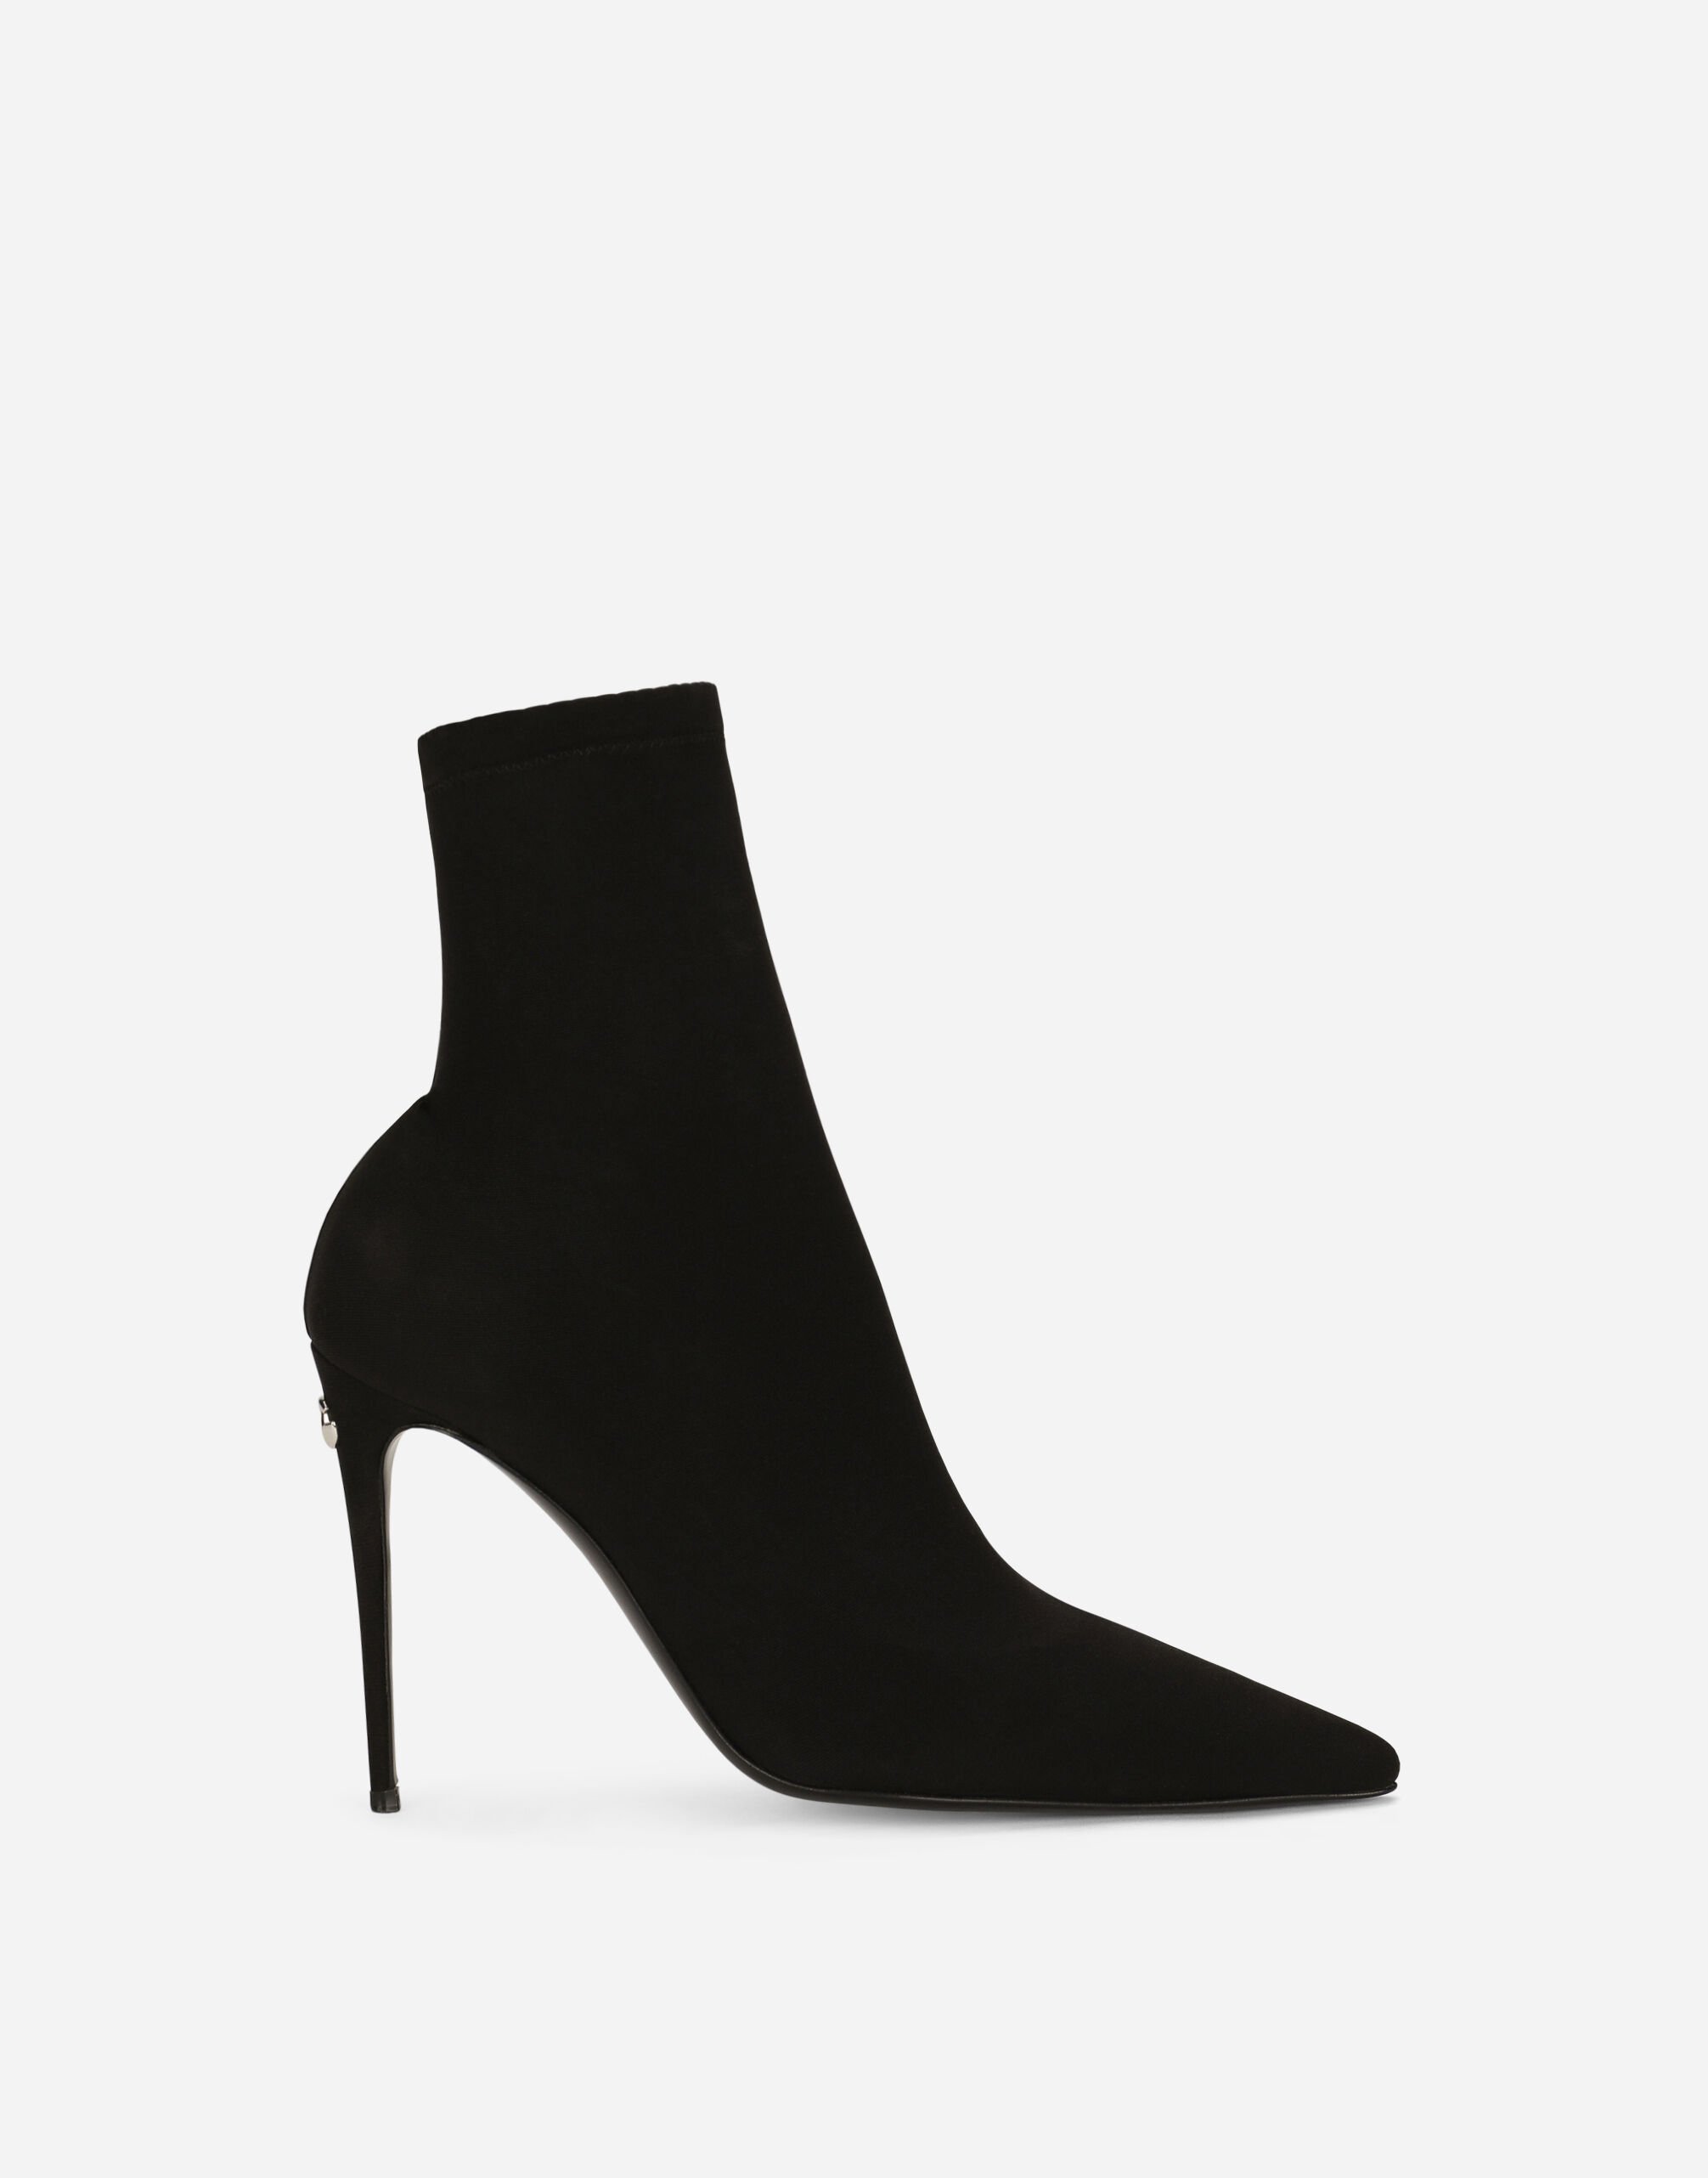 Dolce & Gabbana KIM DOLCE&GABBANA Stretch jersey ankle boots Black VG6187VN187